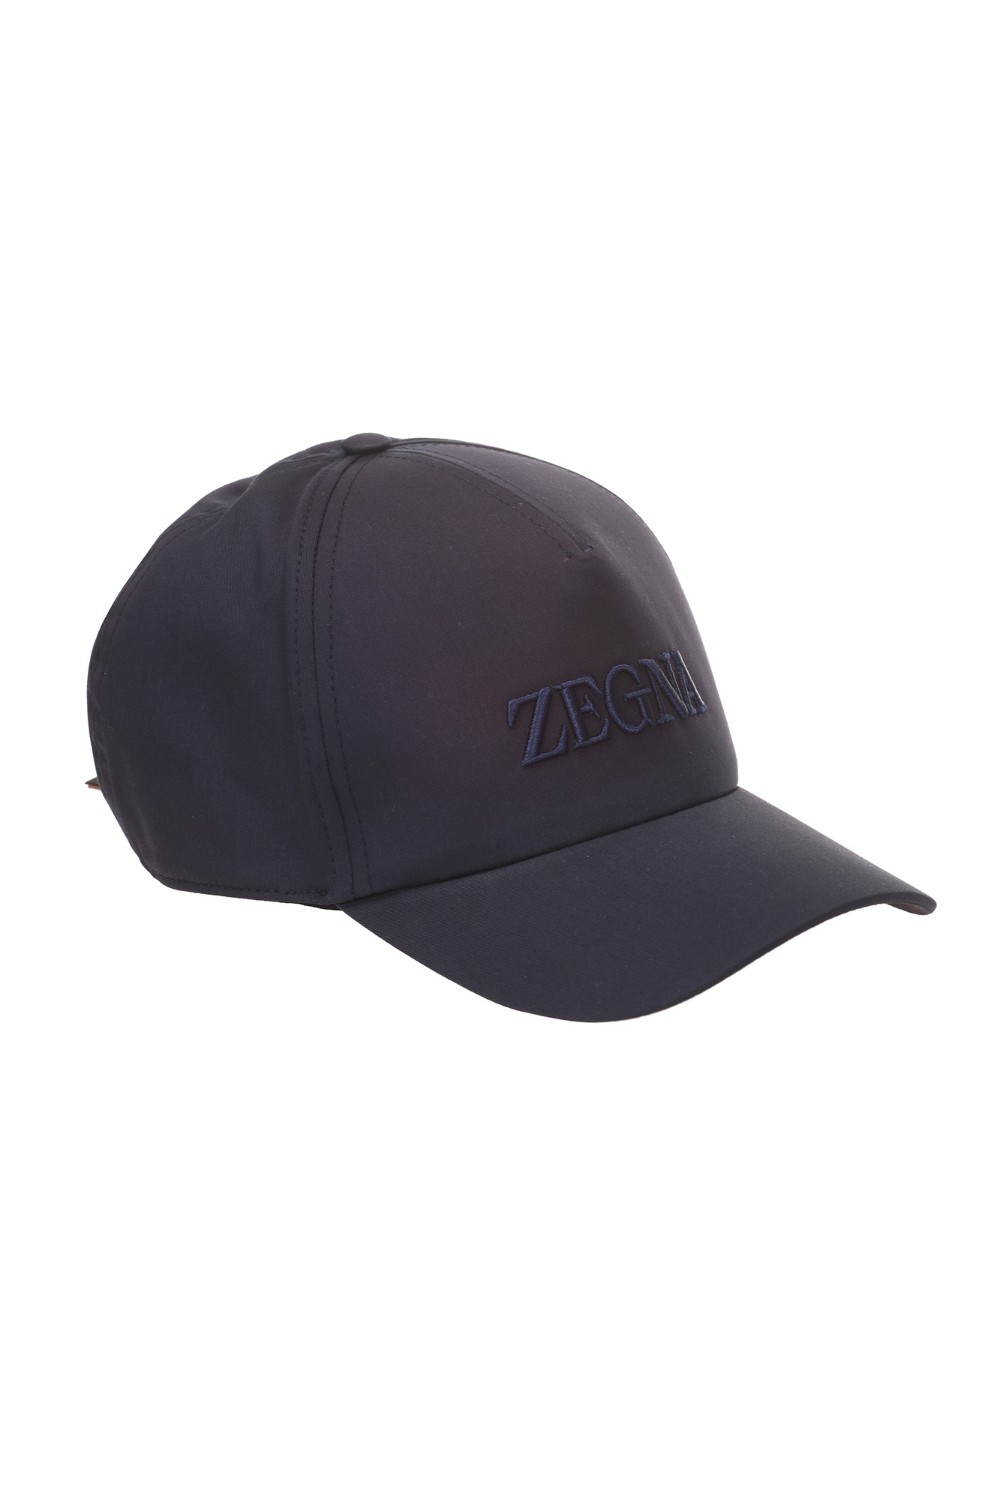 shop ZEGNA  Cappello: Zegna cappello con logo.
Composizione: 97% Cotone 3% Elastan.
Fabbricato in Italia.. Z4I05H B4F-BL1 number 4981739